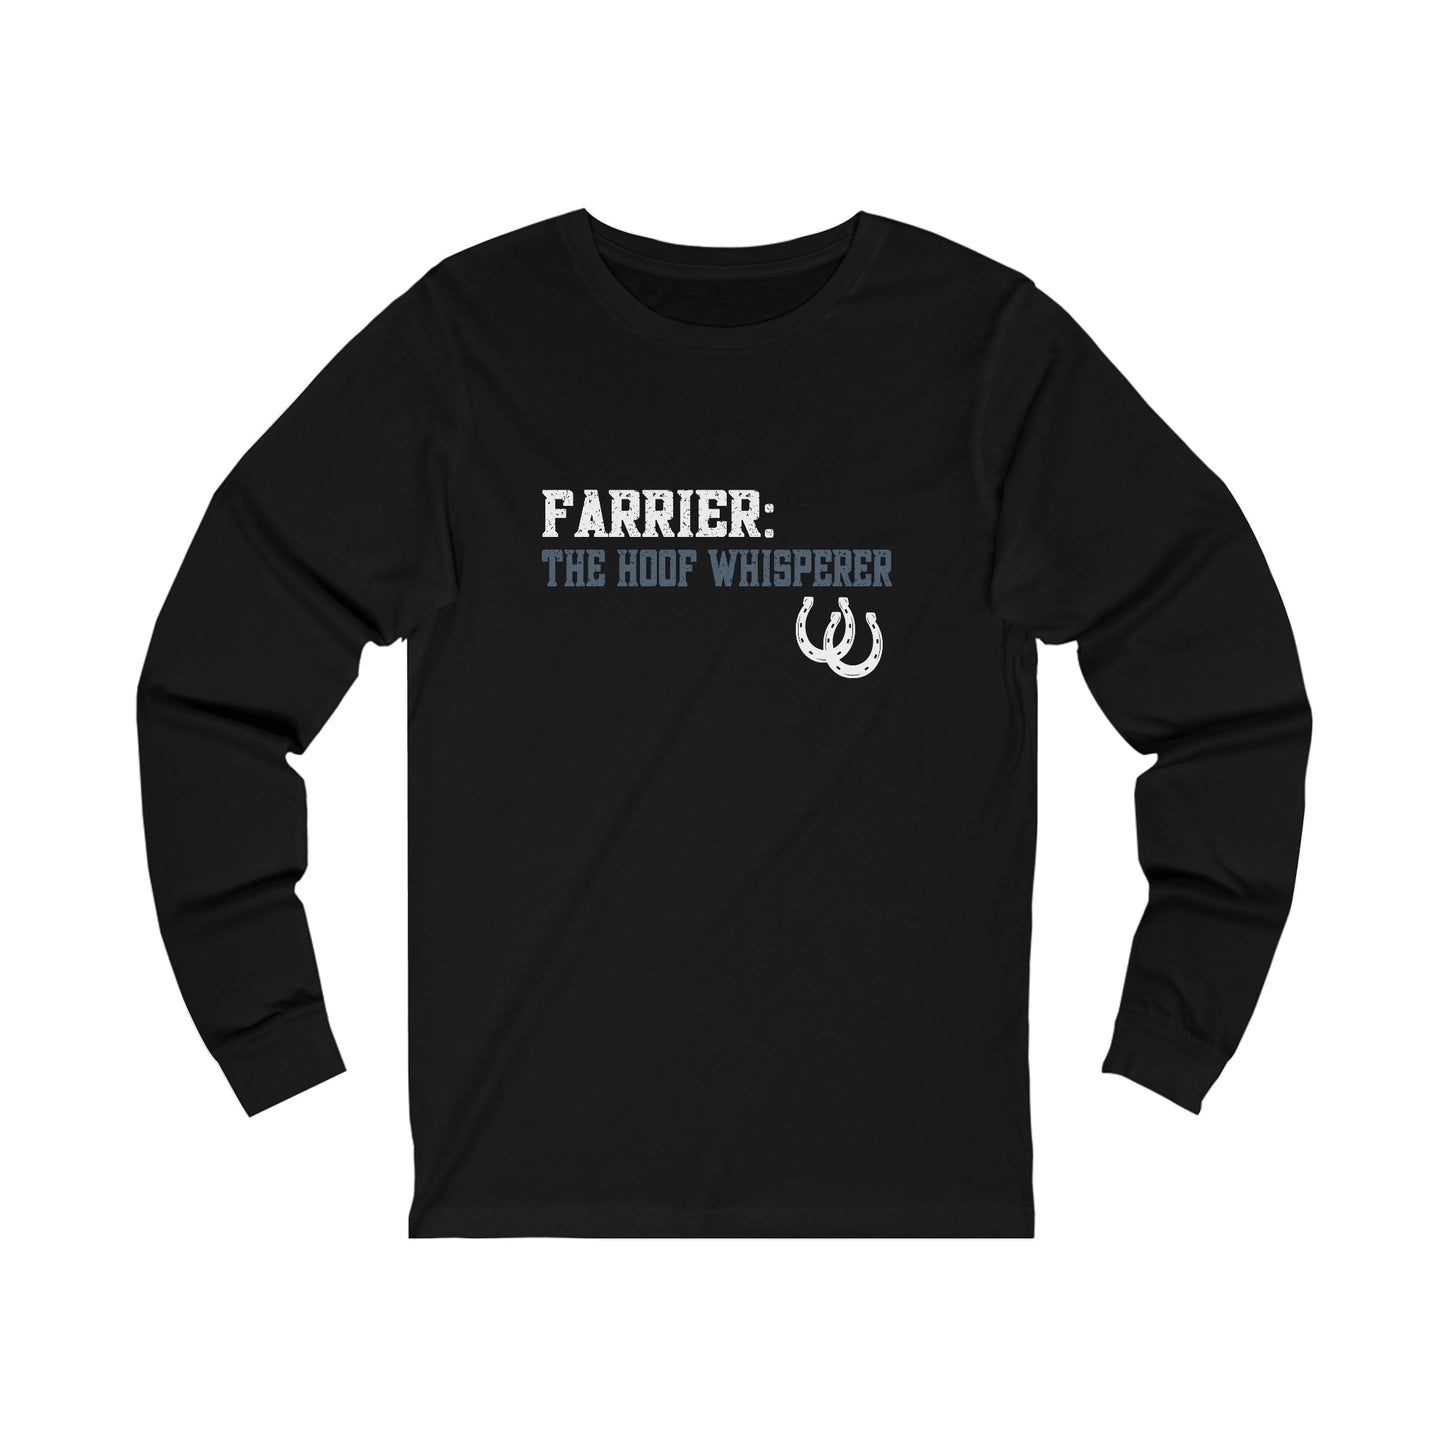 Farrier Longsleeve T-shirt, The Hoof Whisperer, Horseshoer Tee, Professional Farrier Shirt, Gift for Farrier - FlooredByArt